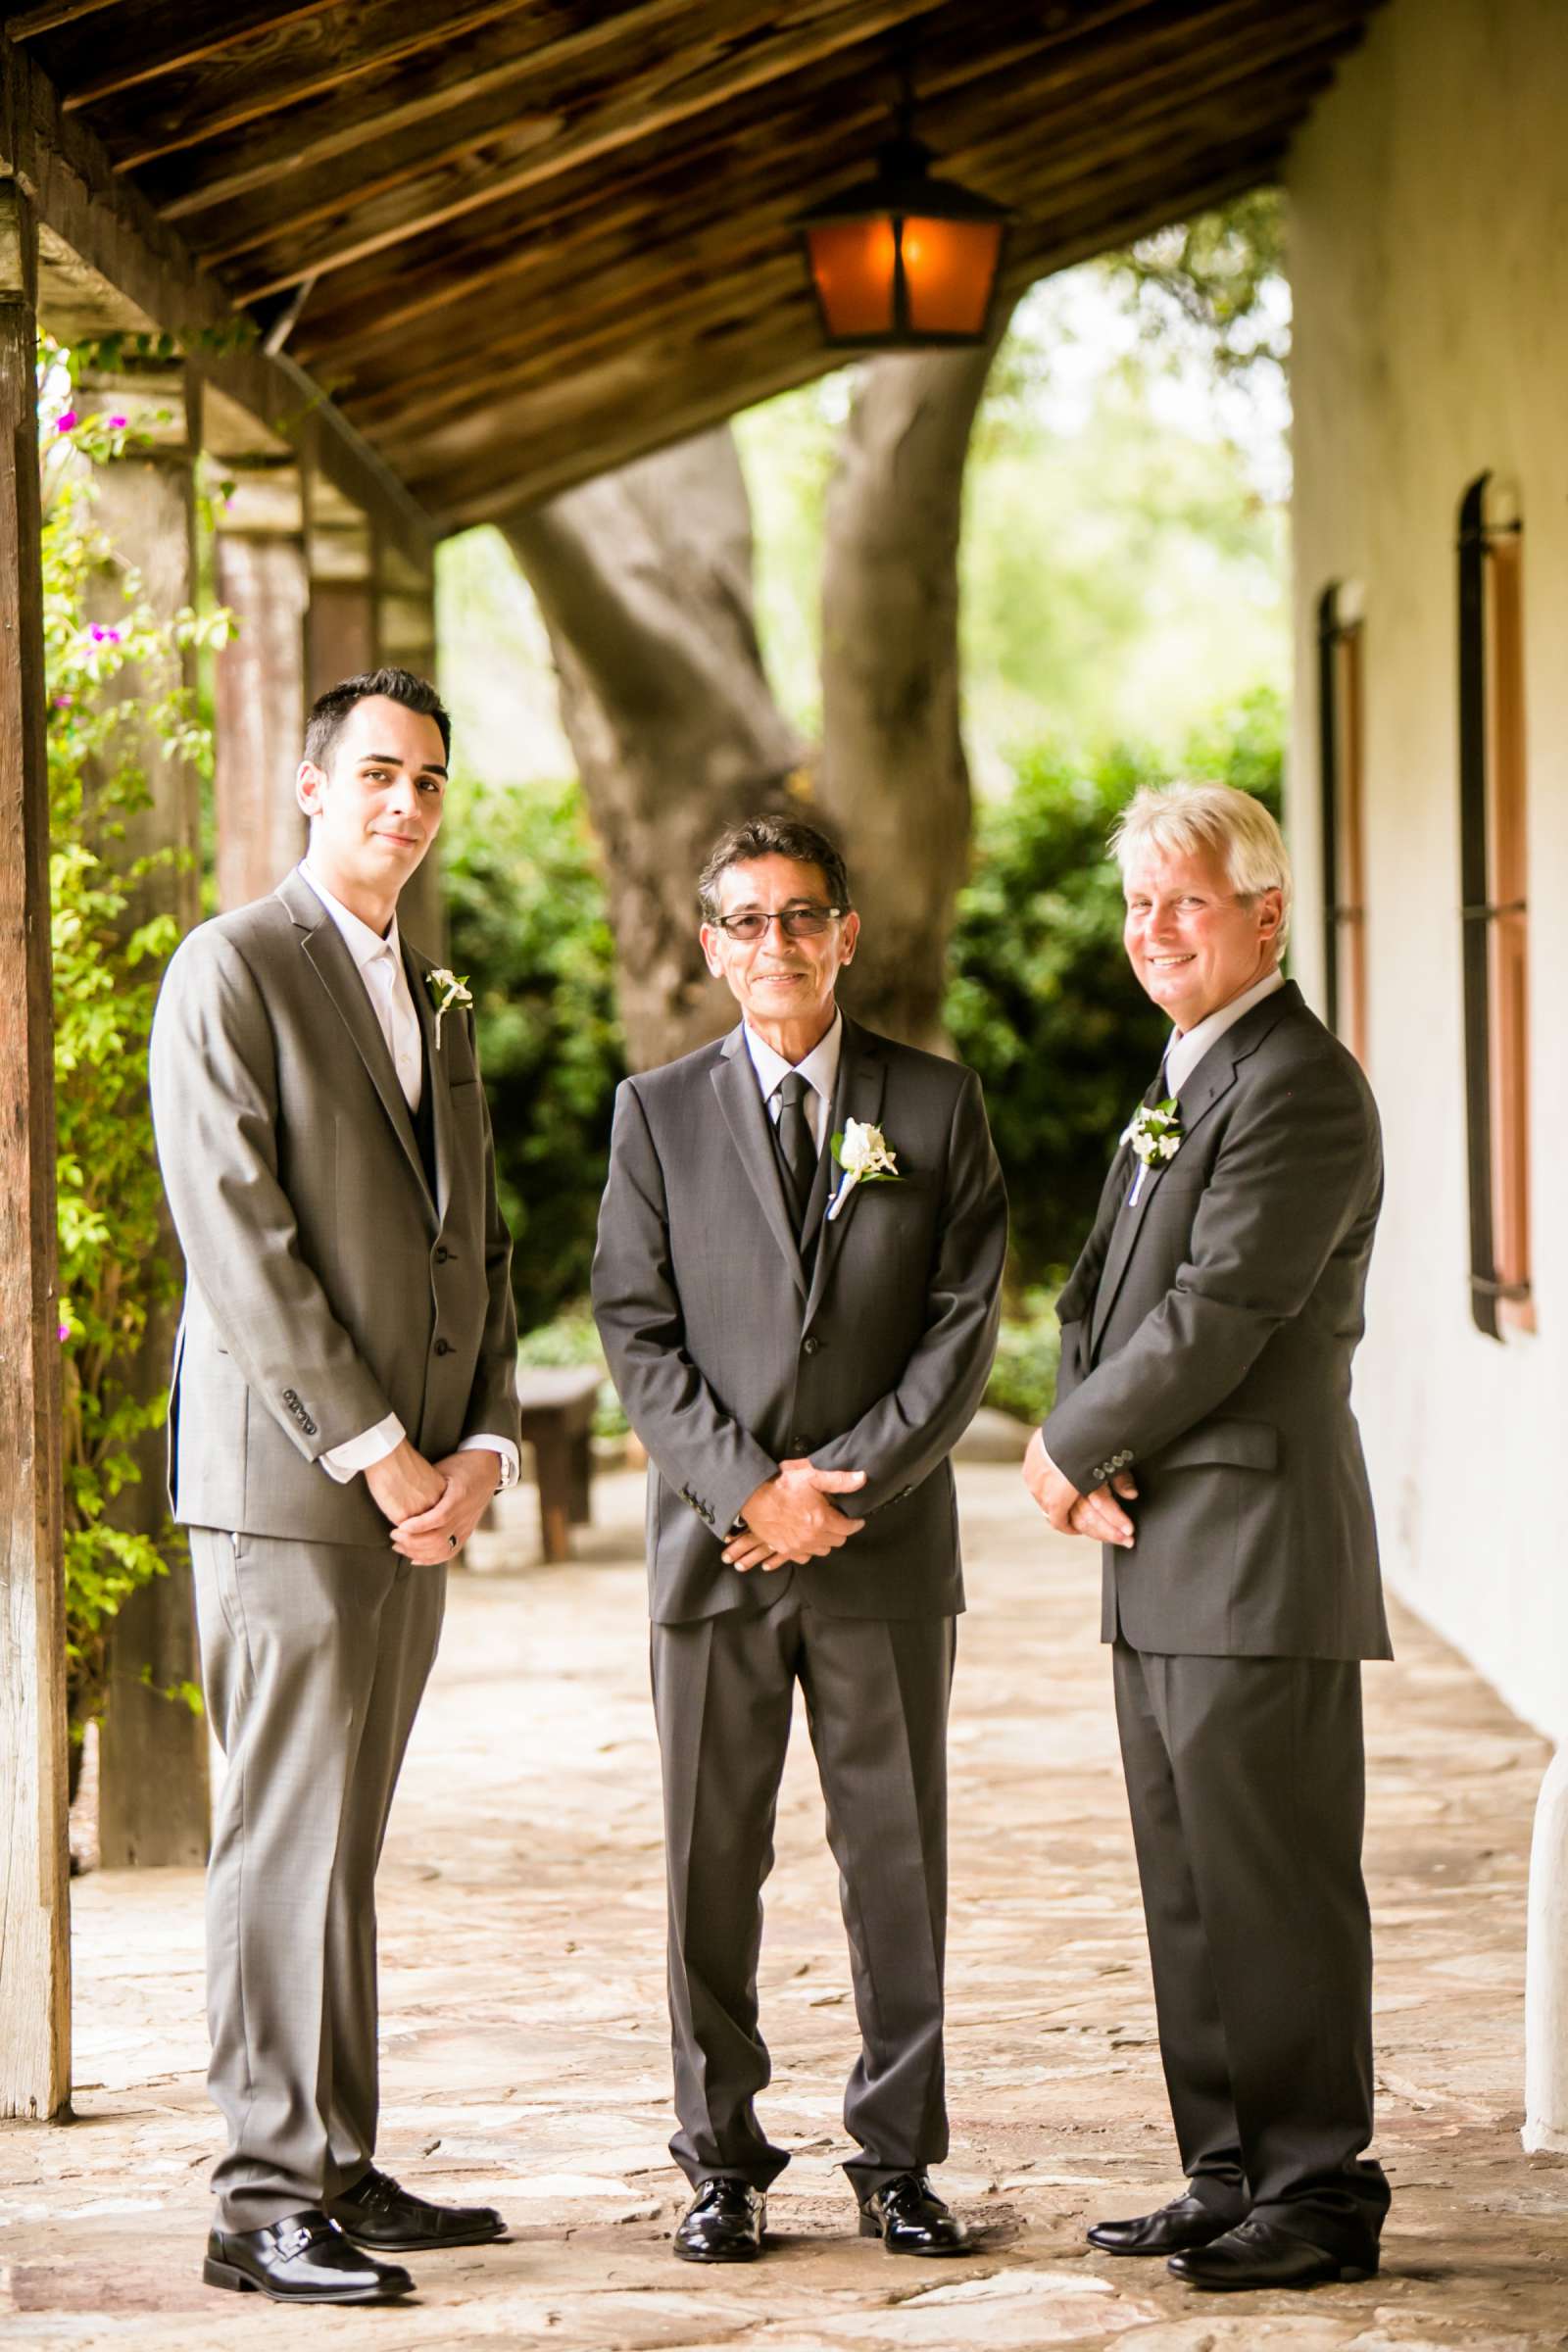 Rancho Buena Vista Adobe Wedding, Ellinor and Frank Wedding Photo #13 by True Photography